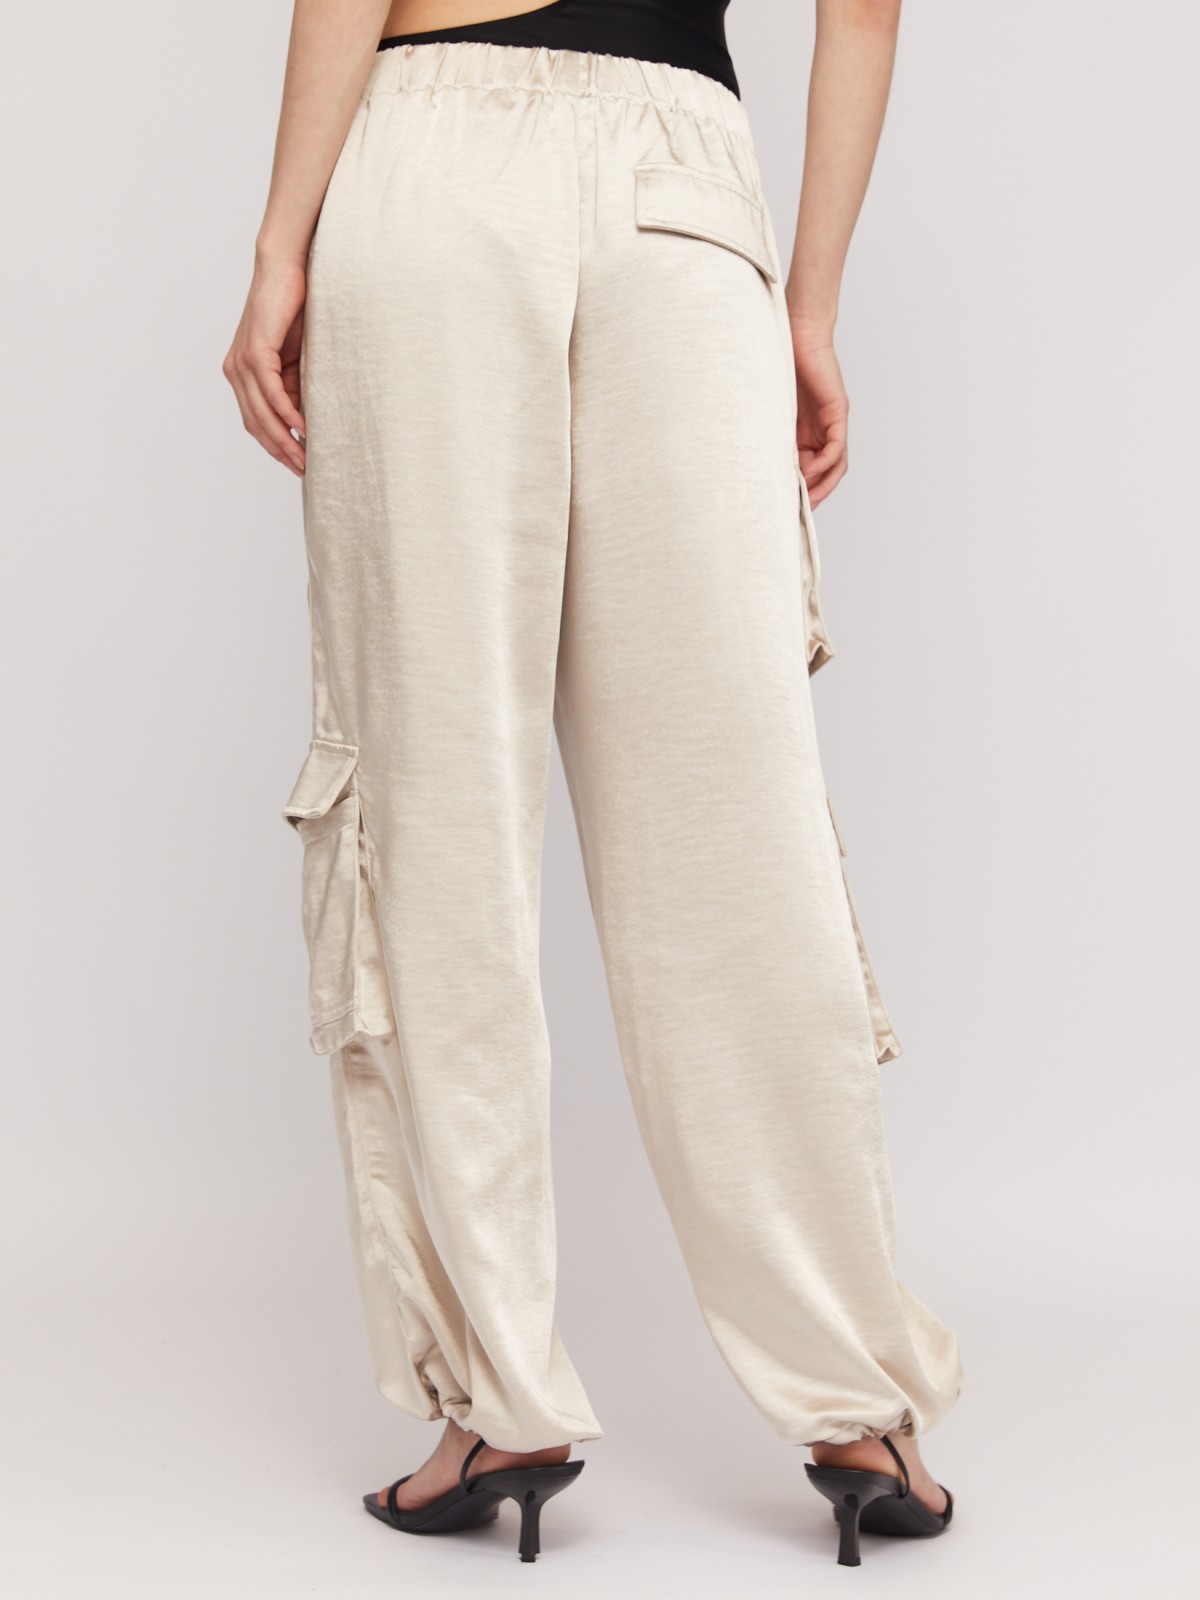 Атласные брюки-джоггеры на резинке с карманами карго zolla 02423730L101, цвет молоко, размер L - фото 5